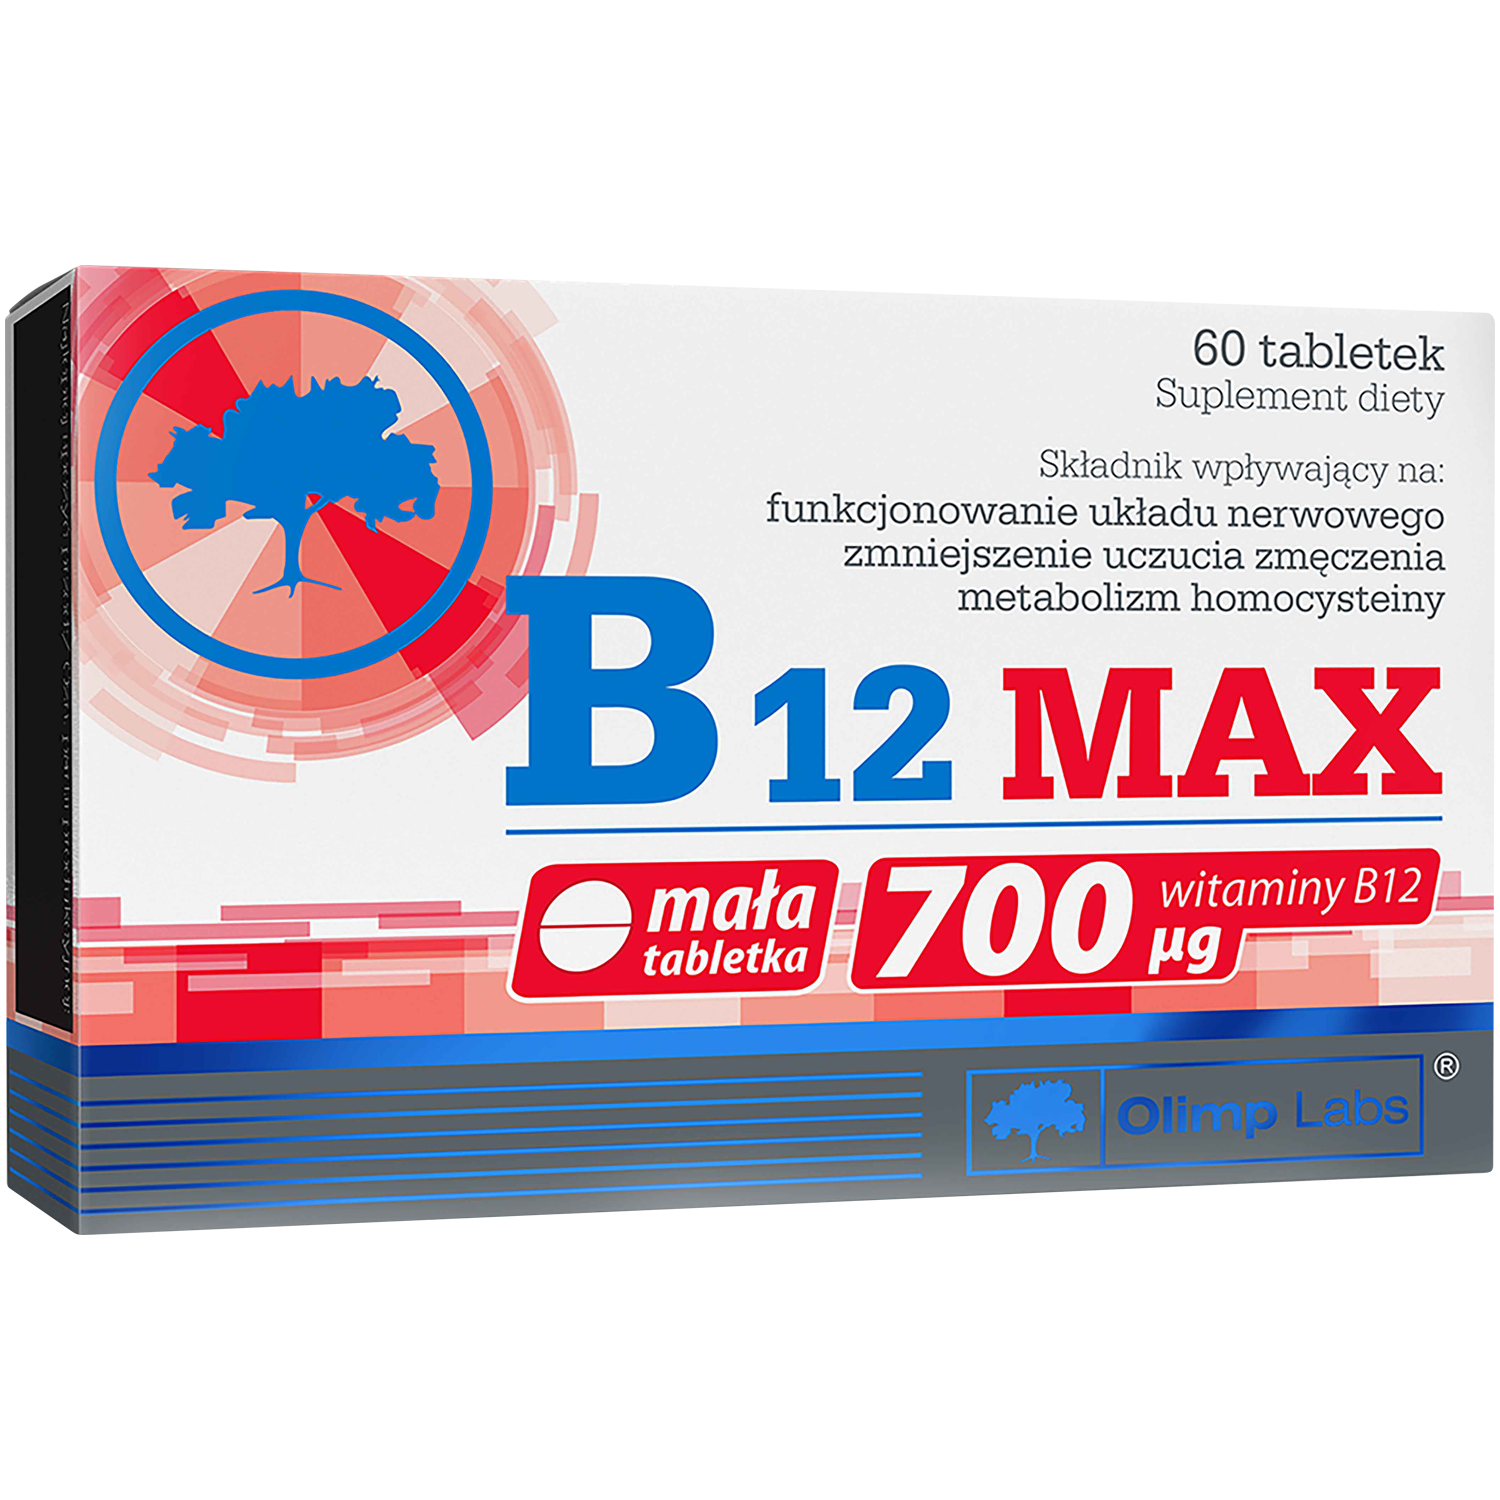 liporedium биологически активная добавка 60 таблеток 1 упаковка Olimp B12 Max биологически активная добавка, 60 таблеток/1 упаковка